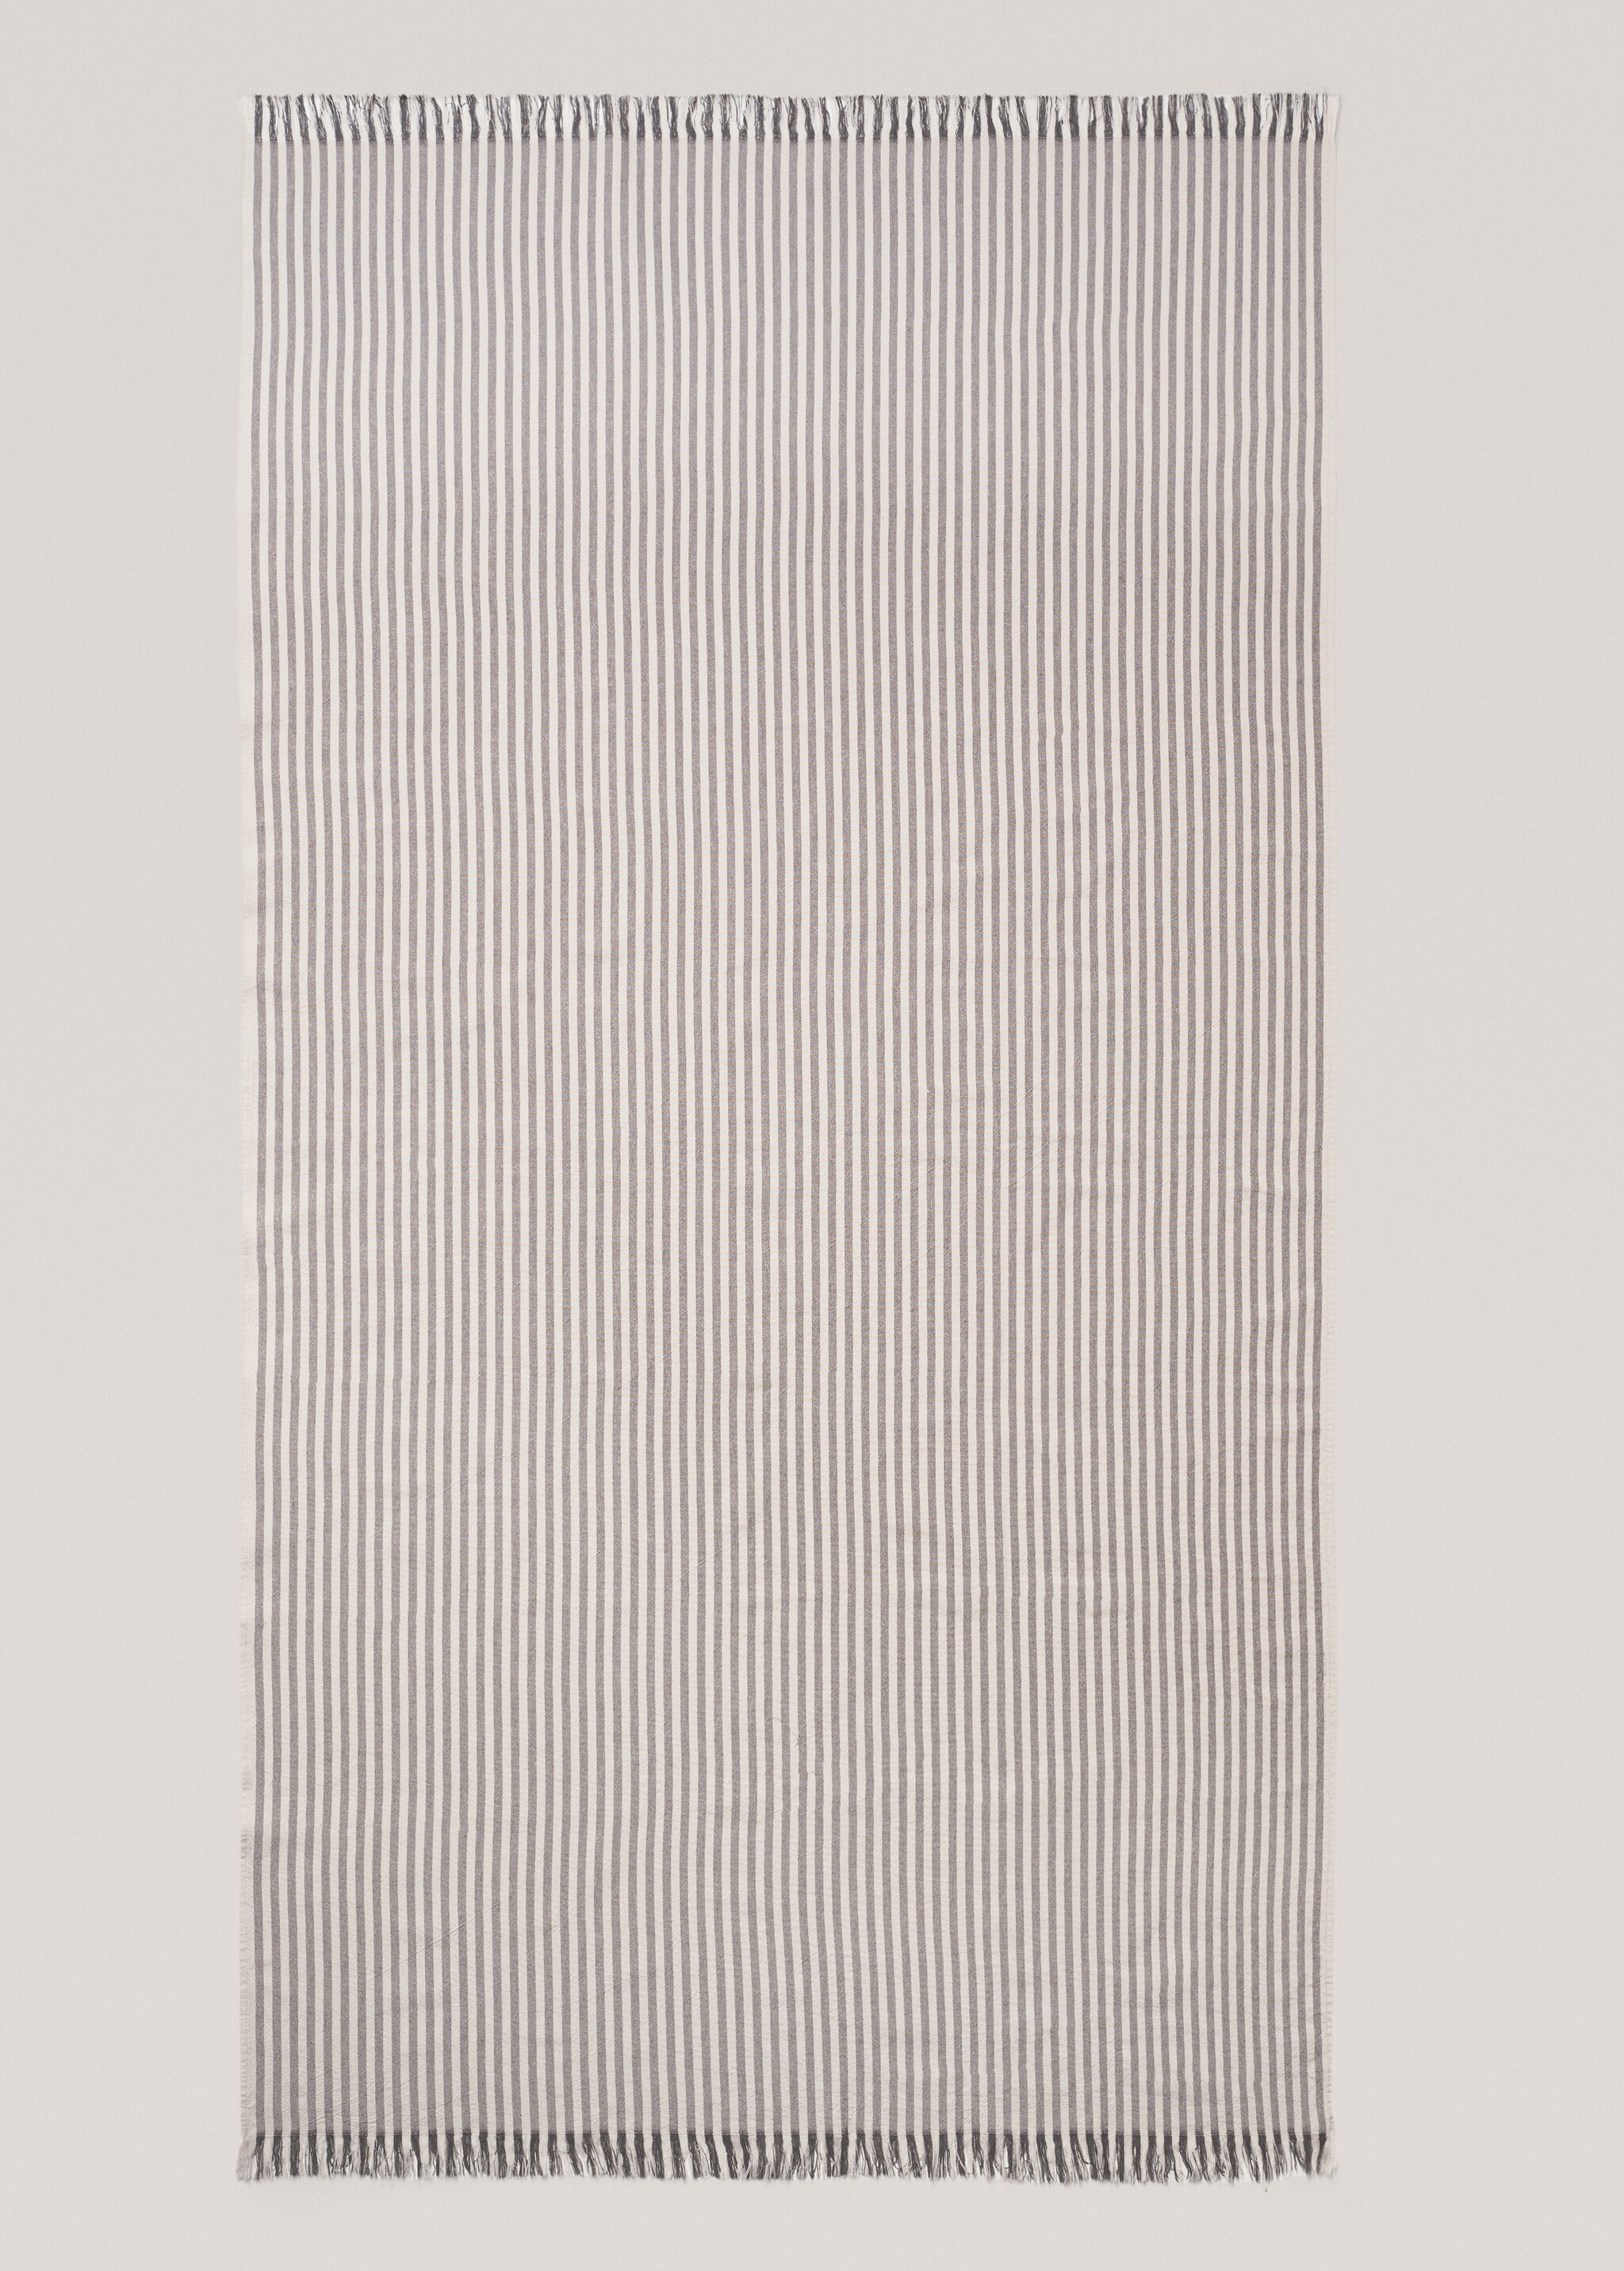 Serviette paréo plage imprimée rayures 150x180 cm - Article sans modèle